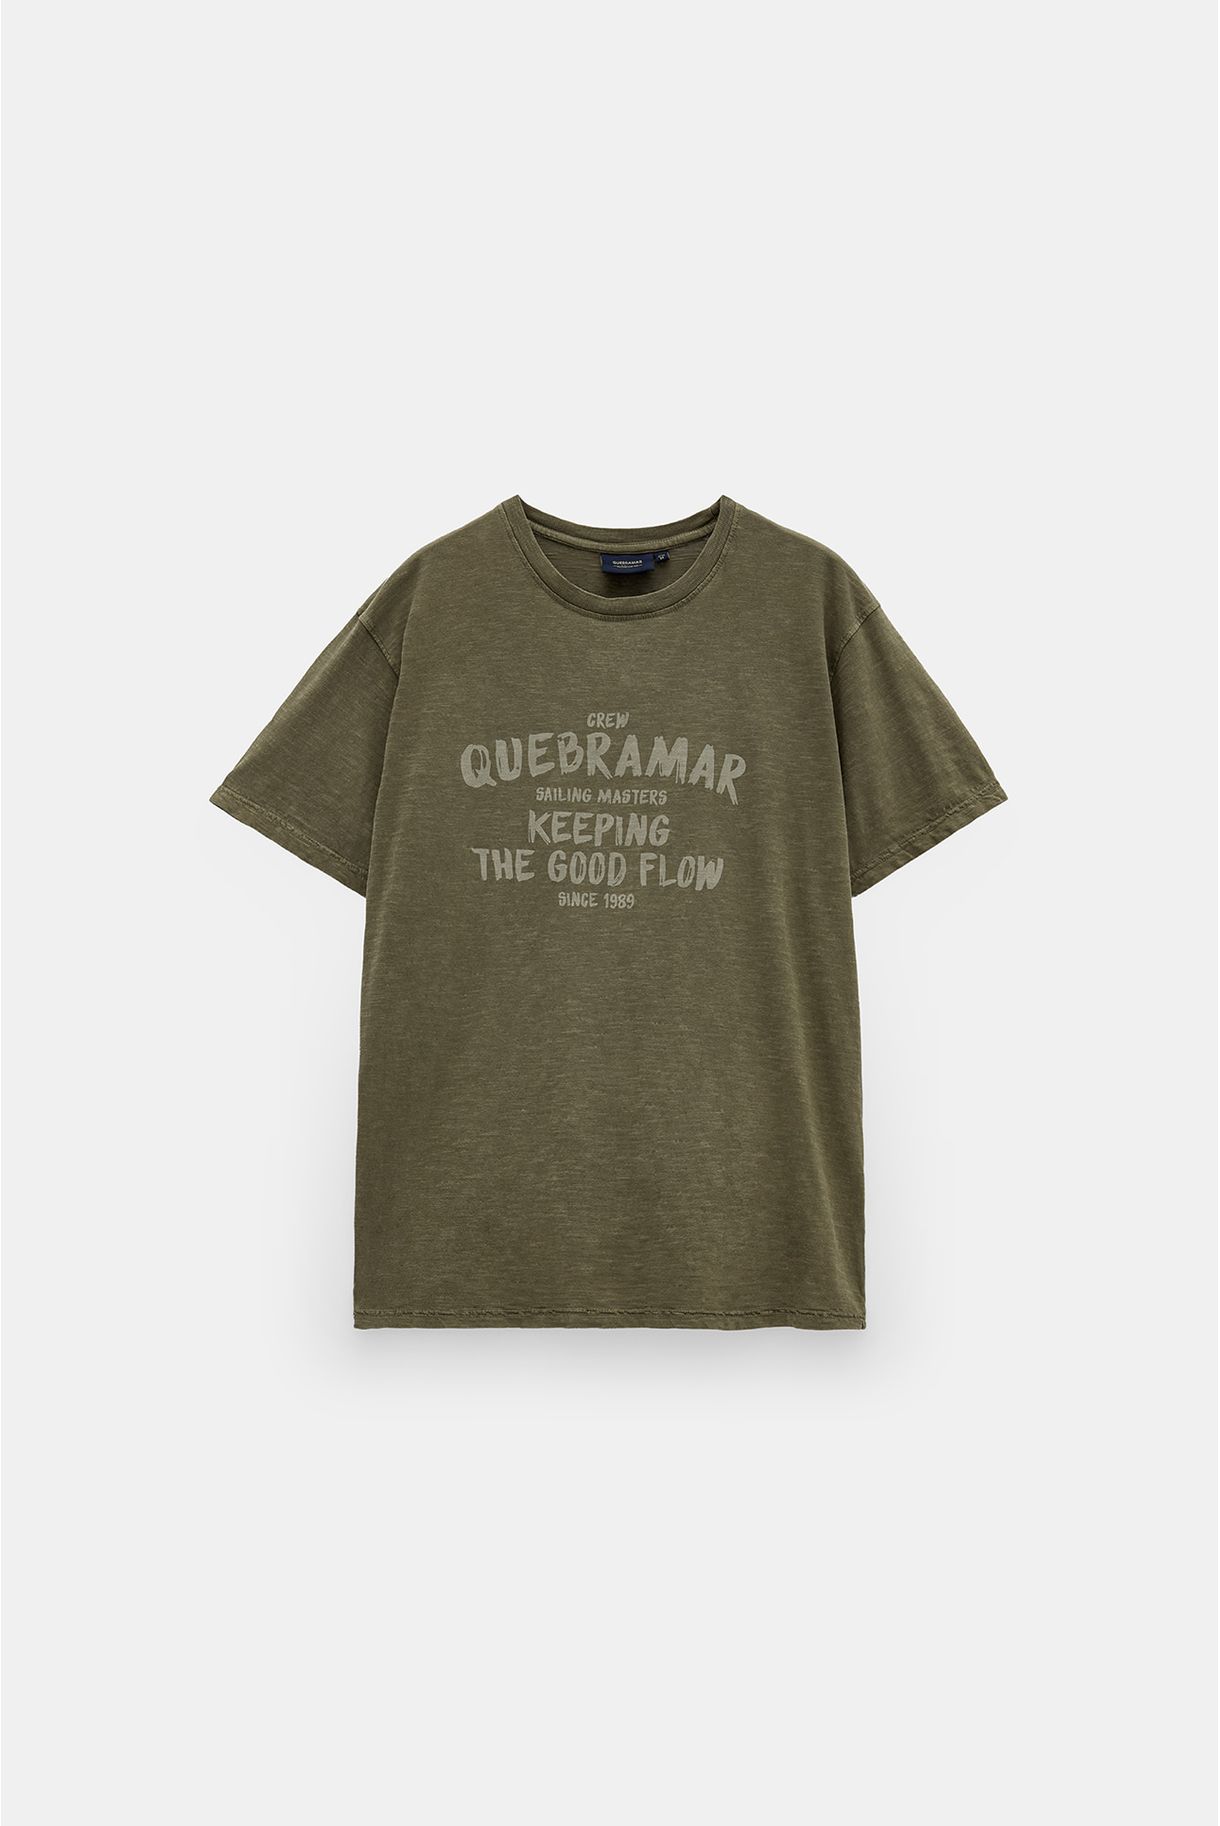 T-shirt print quebramar